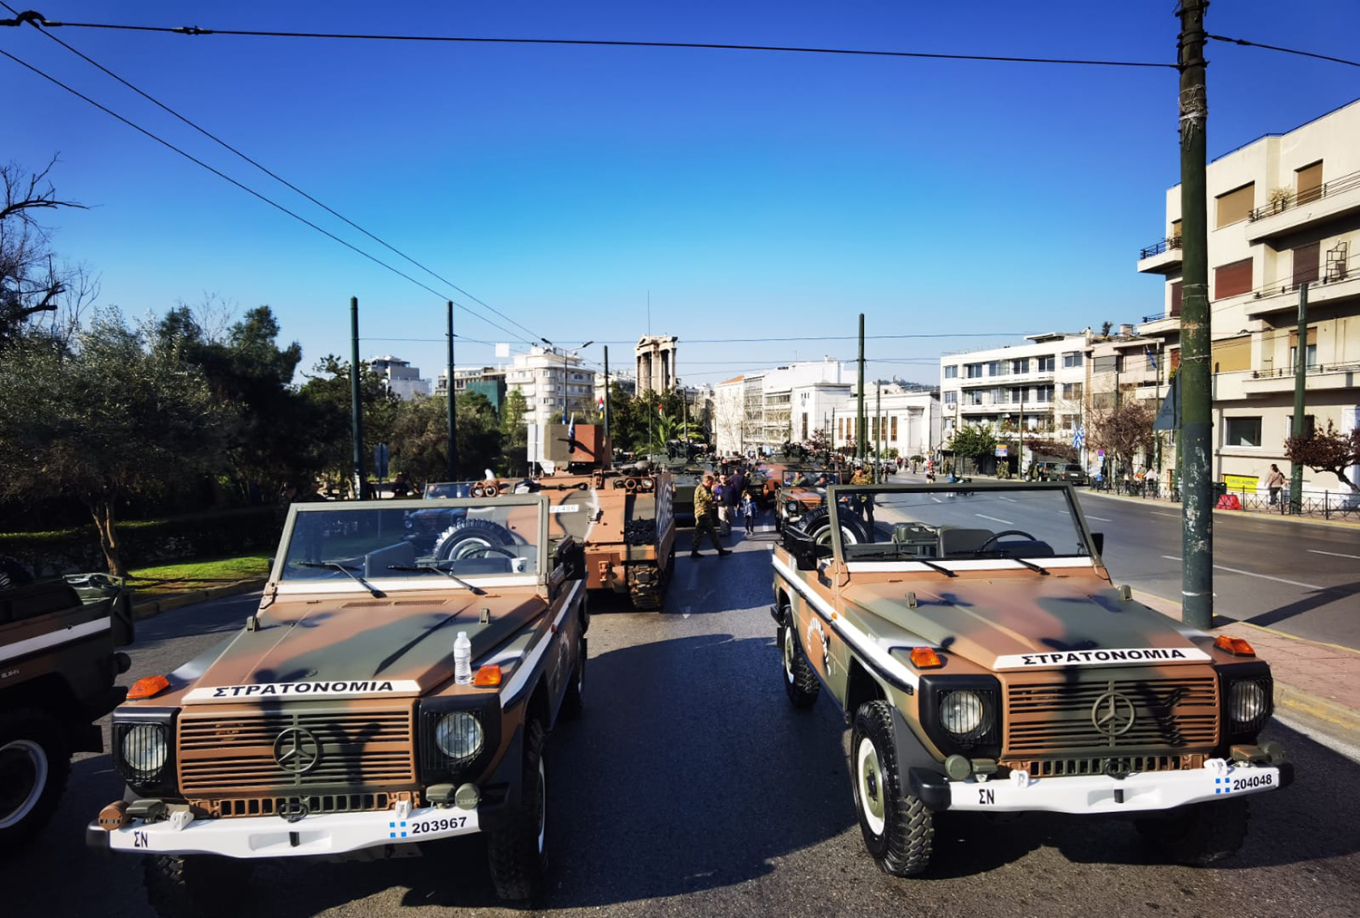 25η Μαρτίου: Οι προετοιμασίες για την μεγάλη στρατιωτική παρέλαση στην Αθήνα